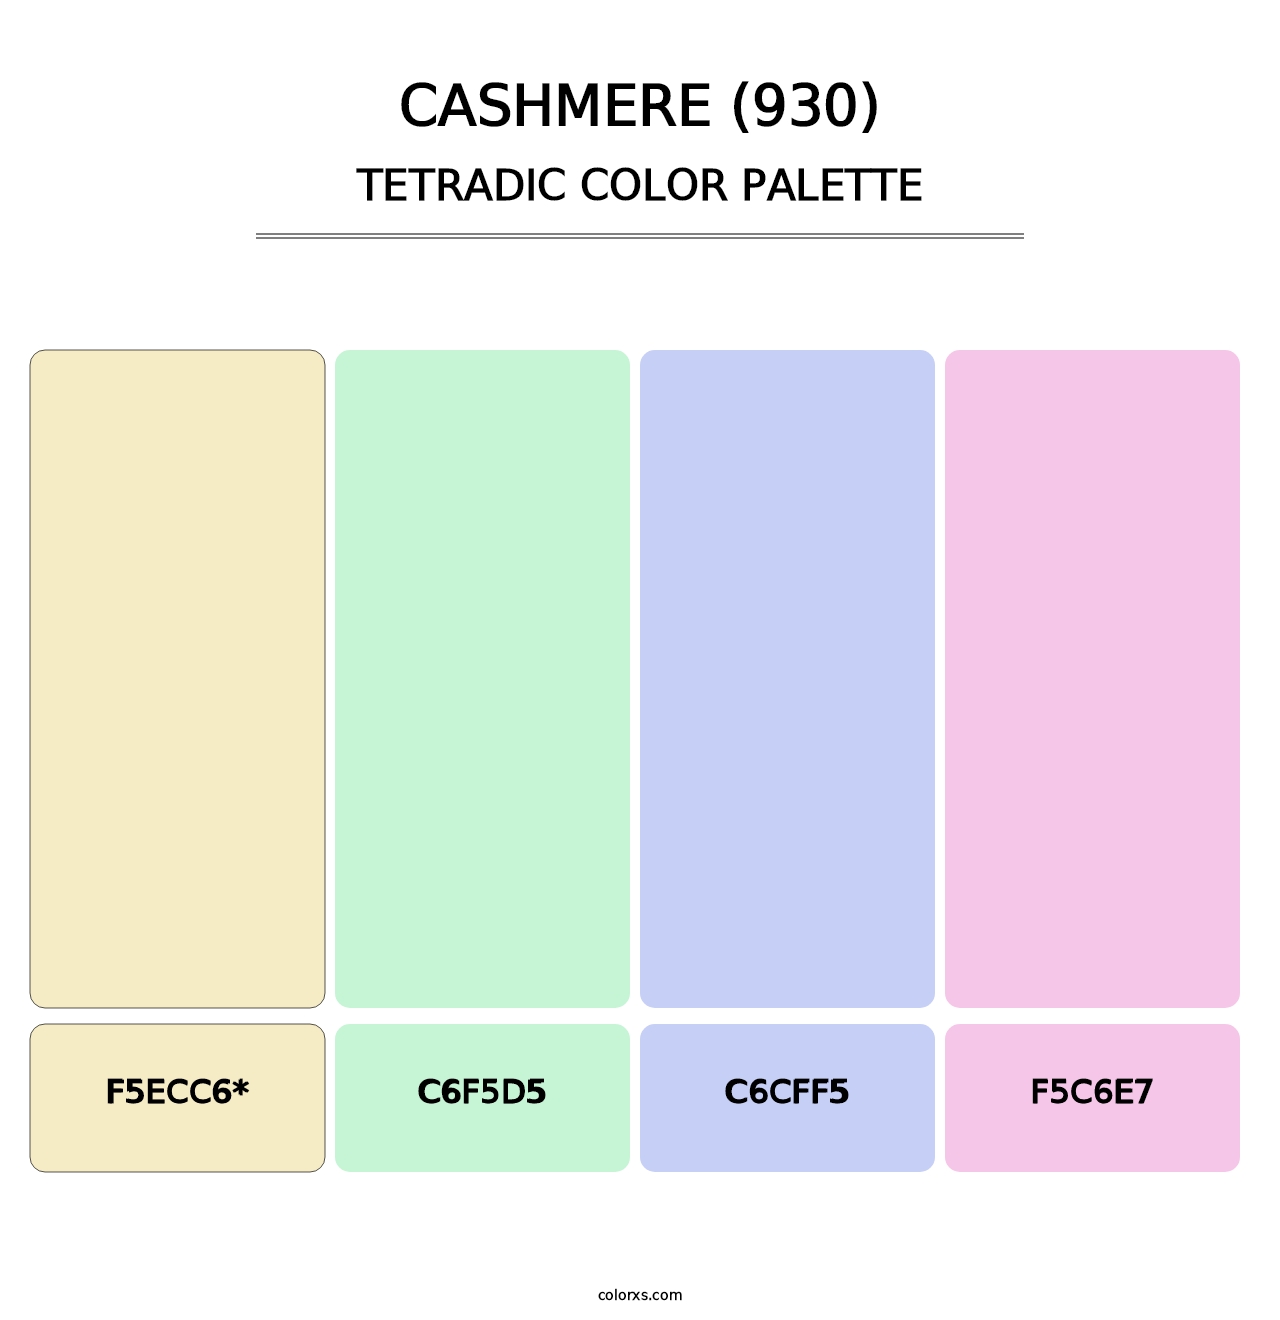 Cashmere (930) - Tetradic Color Palette